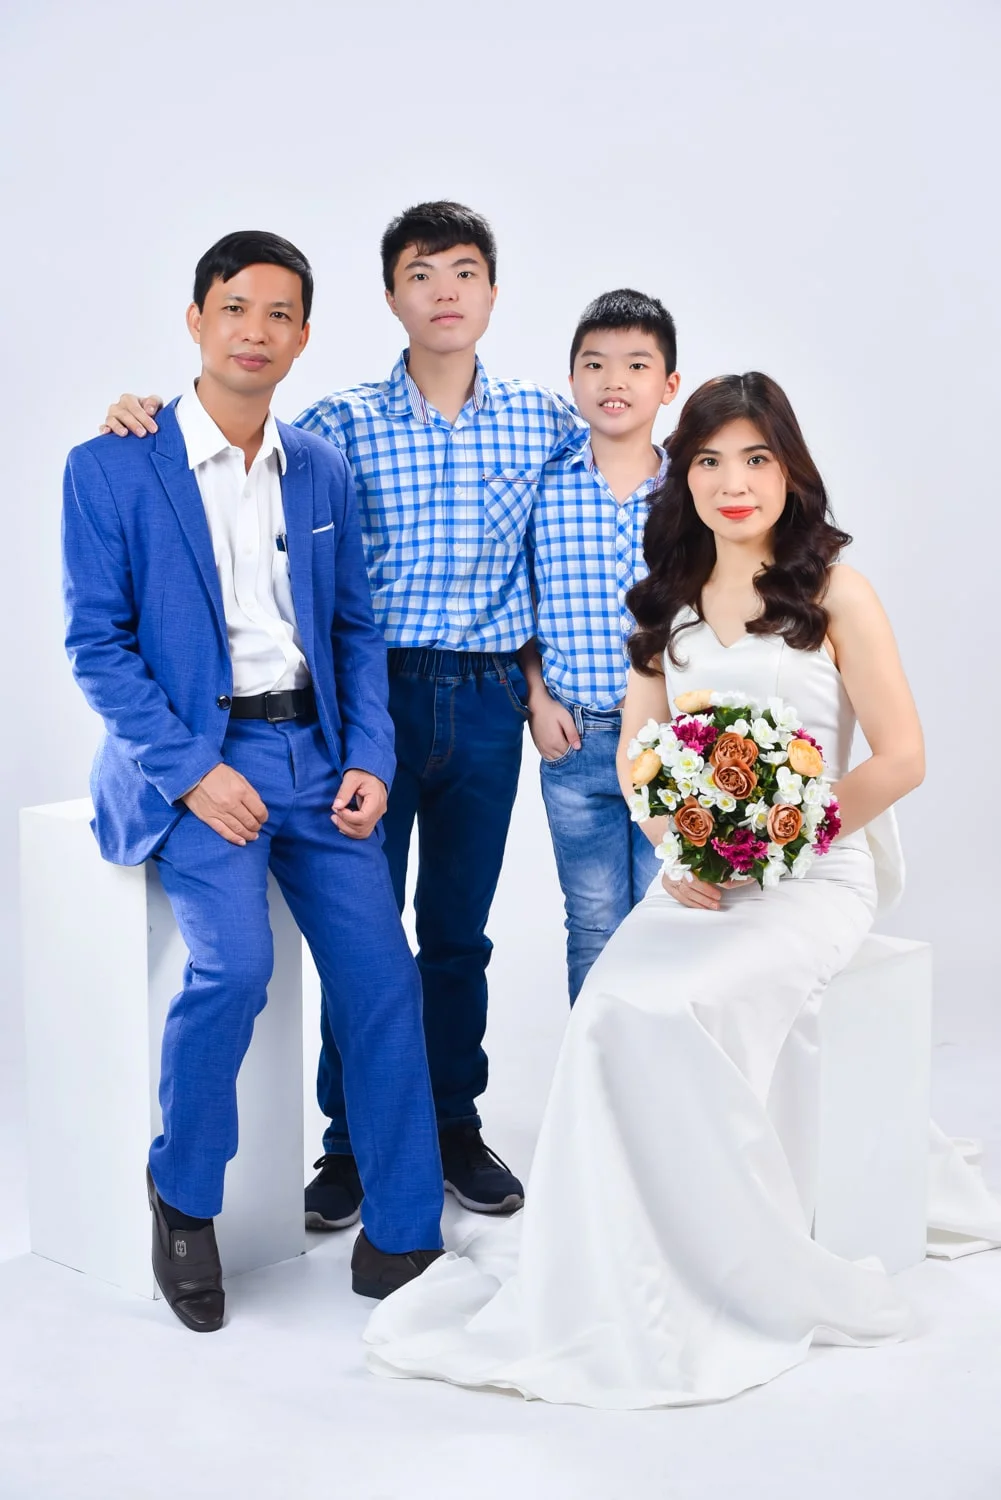 Anh gia dinh 4 nguoi 10 min - Chụp ảnh kỷ niệm 15 năm ngày cưới gia đình chị Tho- HThao Studio